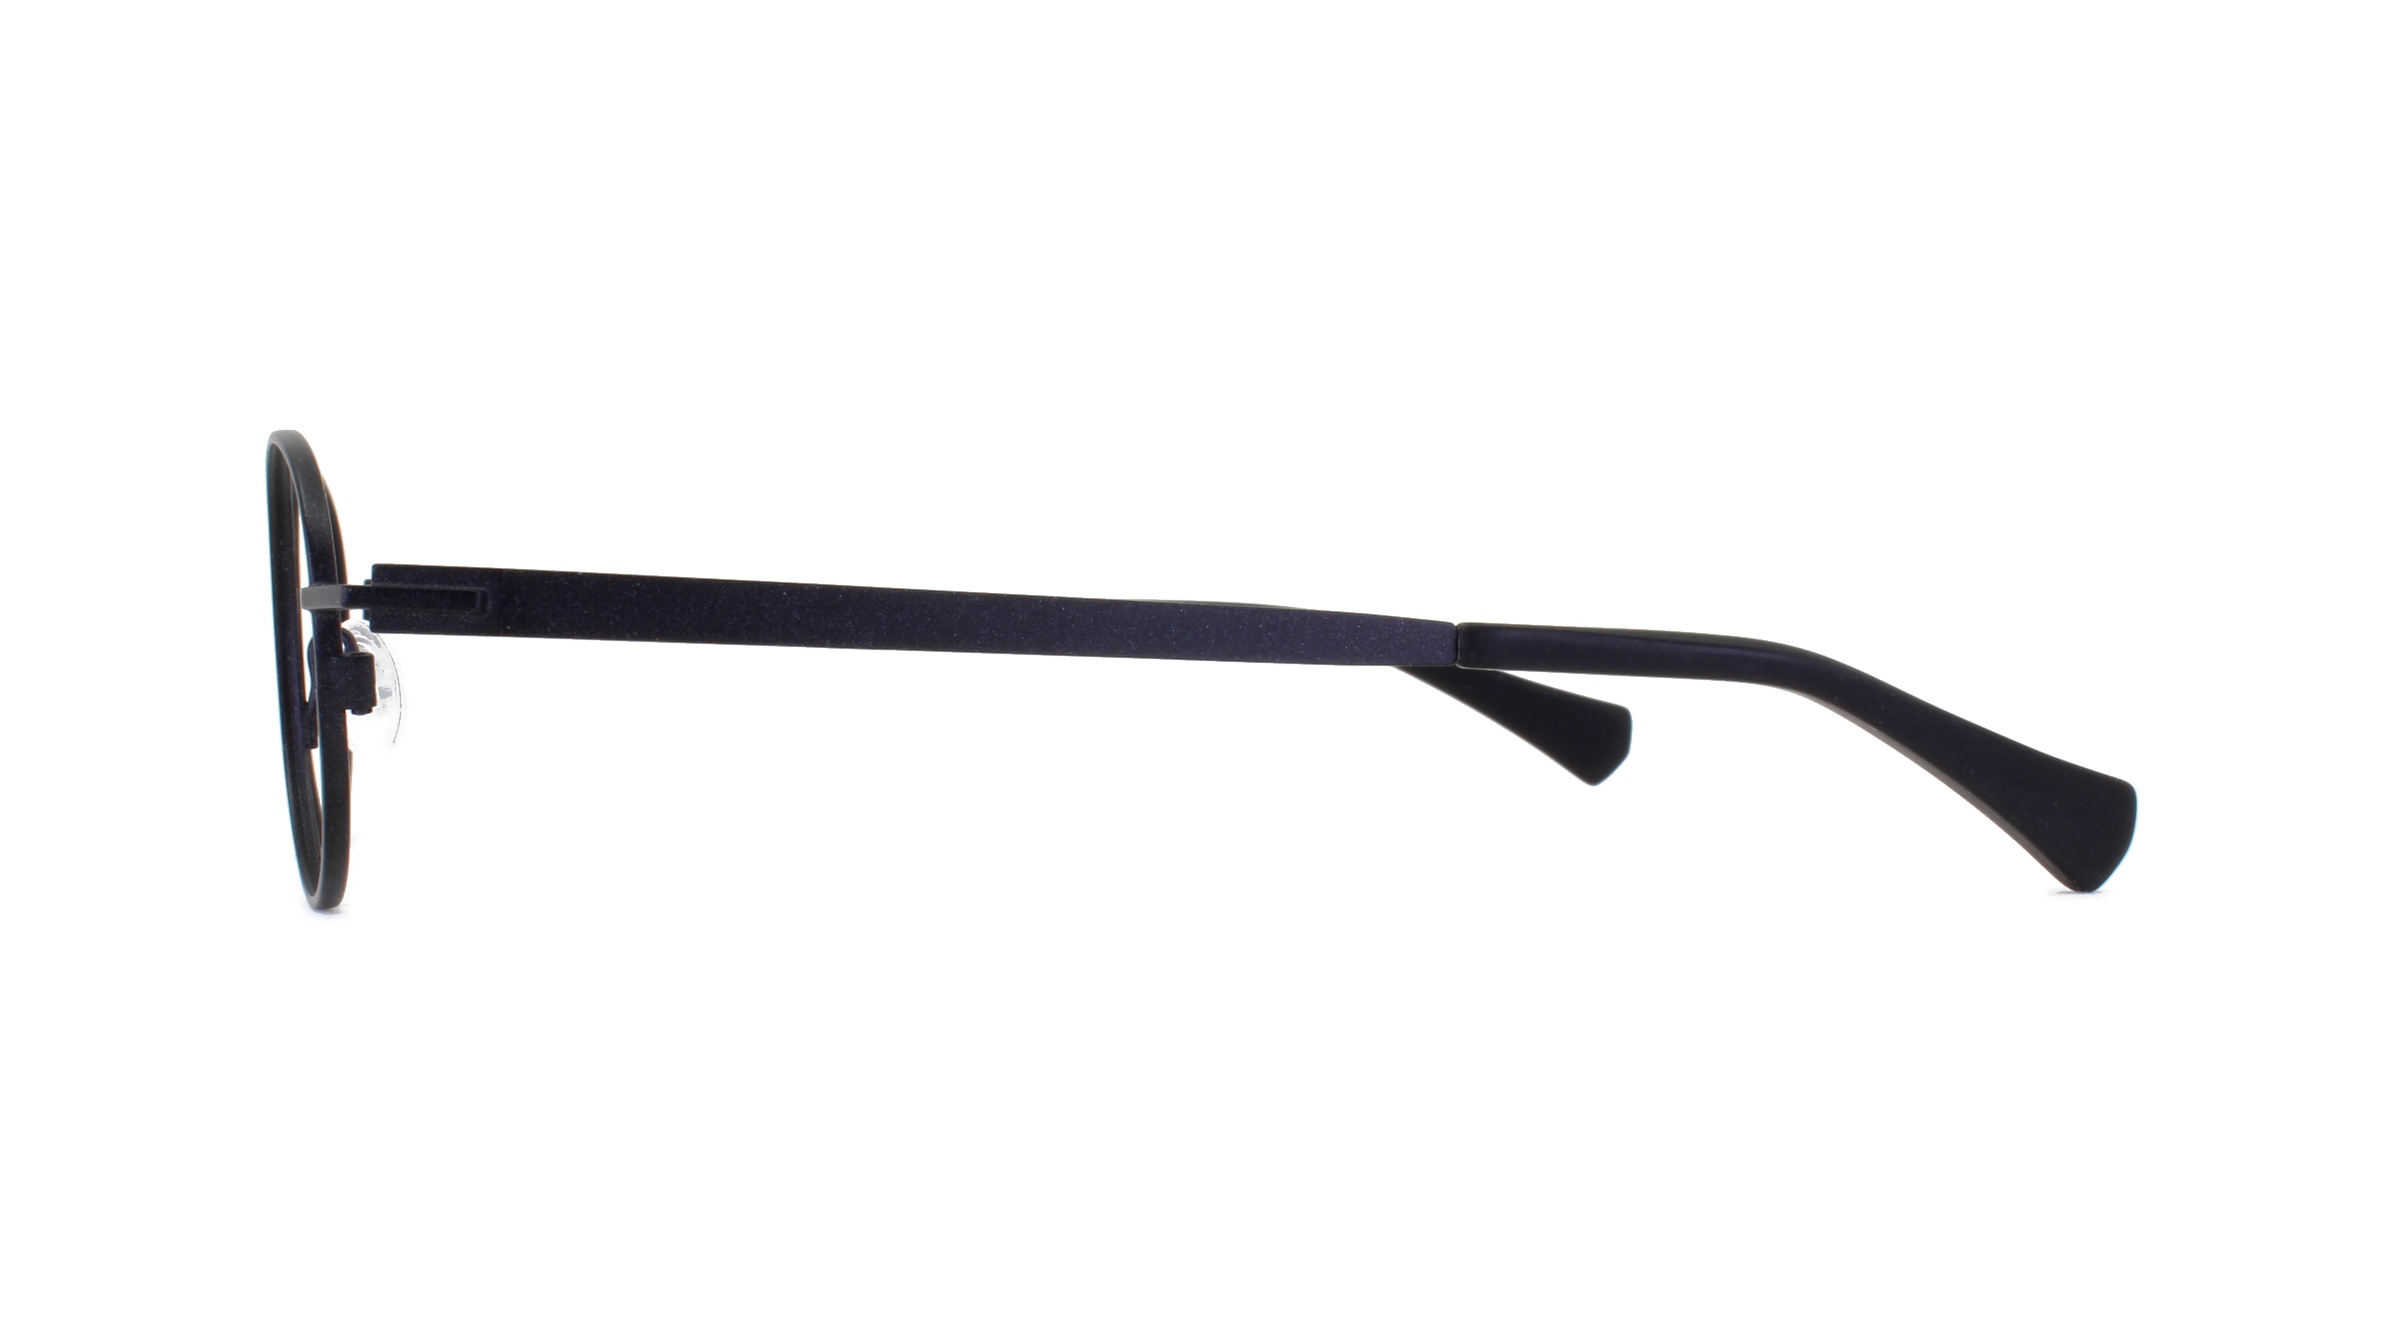 Paire de lunettes de vue Matttew-eyewear Orchid couleur noir - Côté droit - Doyle